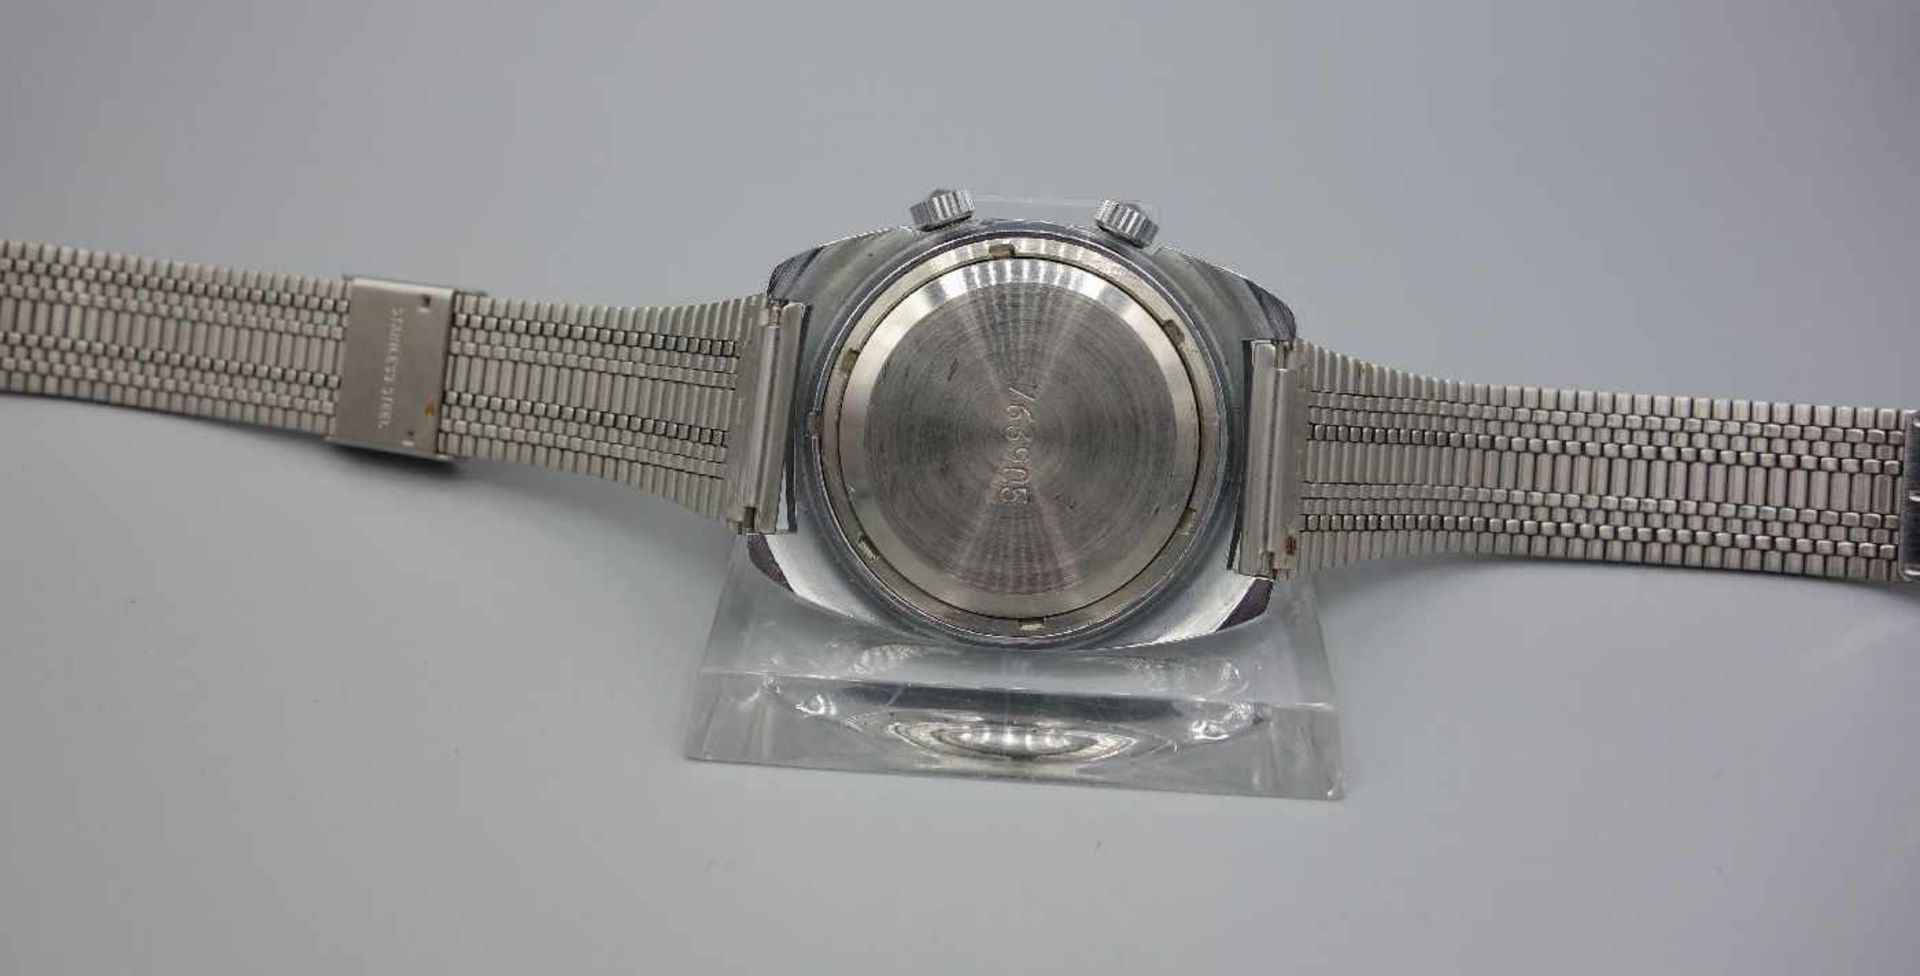 ZWEI ARMBANDUHREN MIT WECKFUNKTION / wristwatches, Russland, Manufaktur Poljot. Handaufzug. 1) - Image 4 of 8